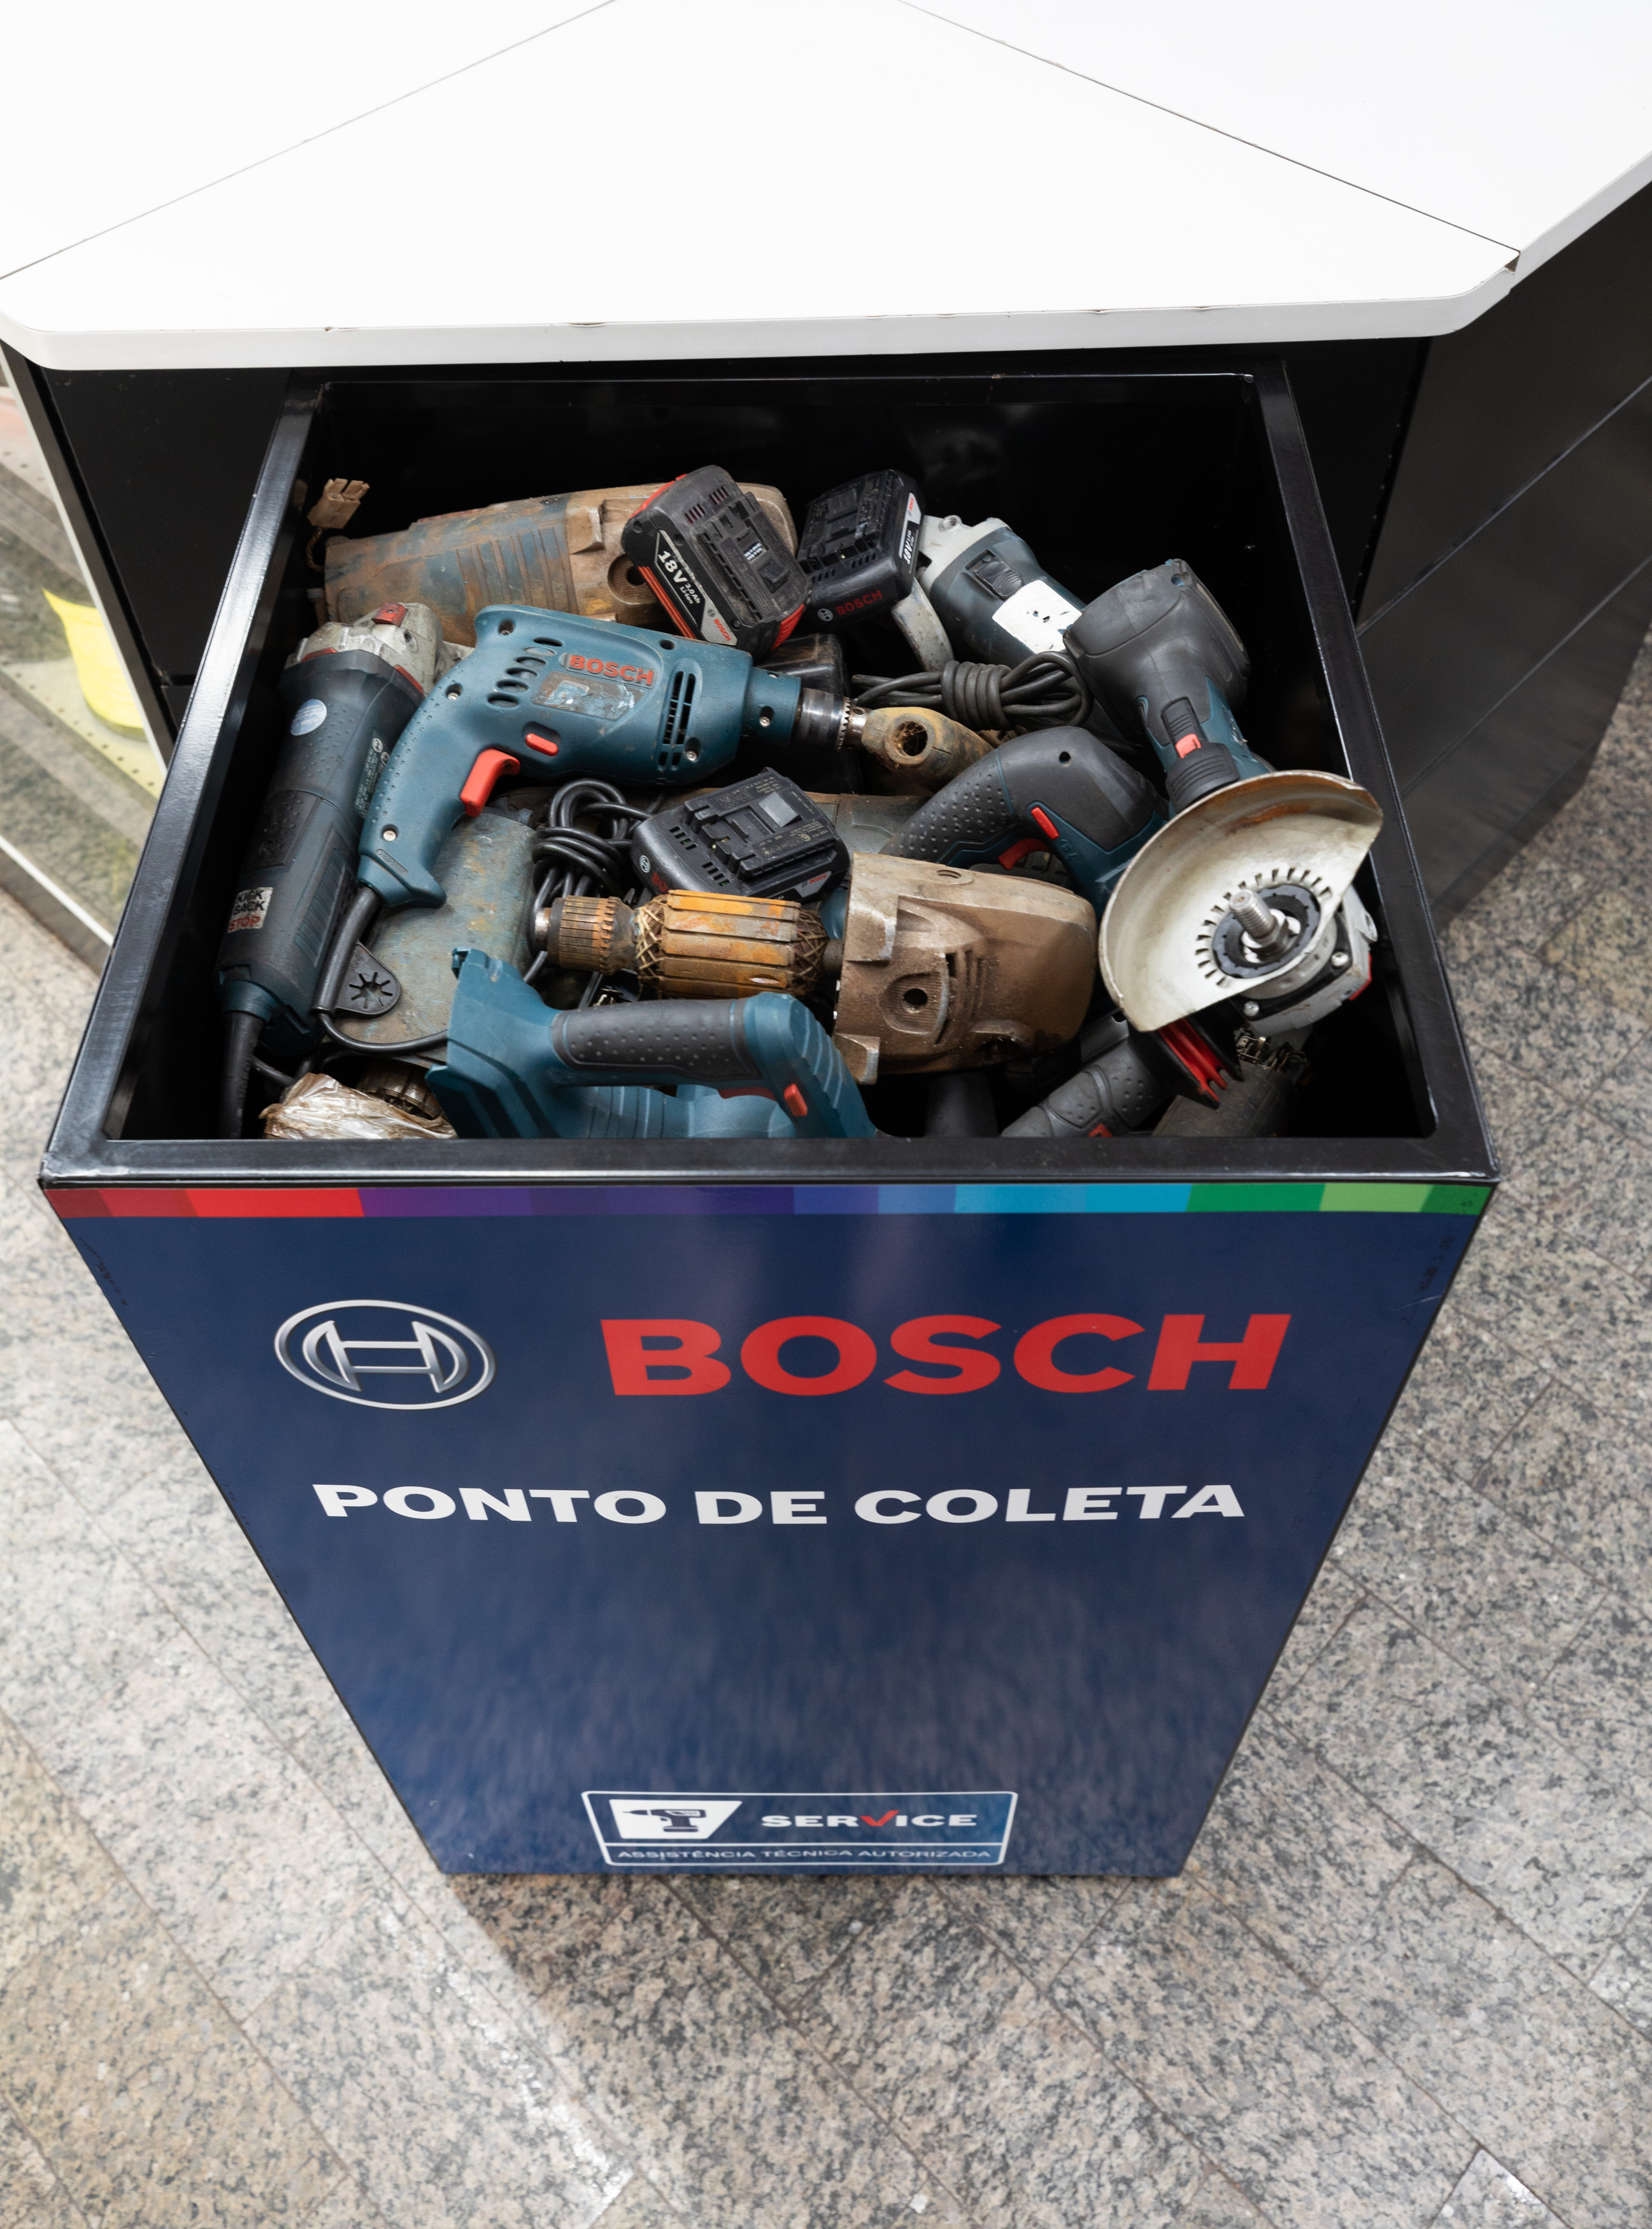 	Logística reversa: reciclagem de embalagens e correta destinação de componentes eletrônicos, filtros e baterias automotivas